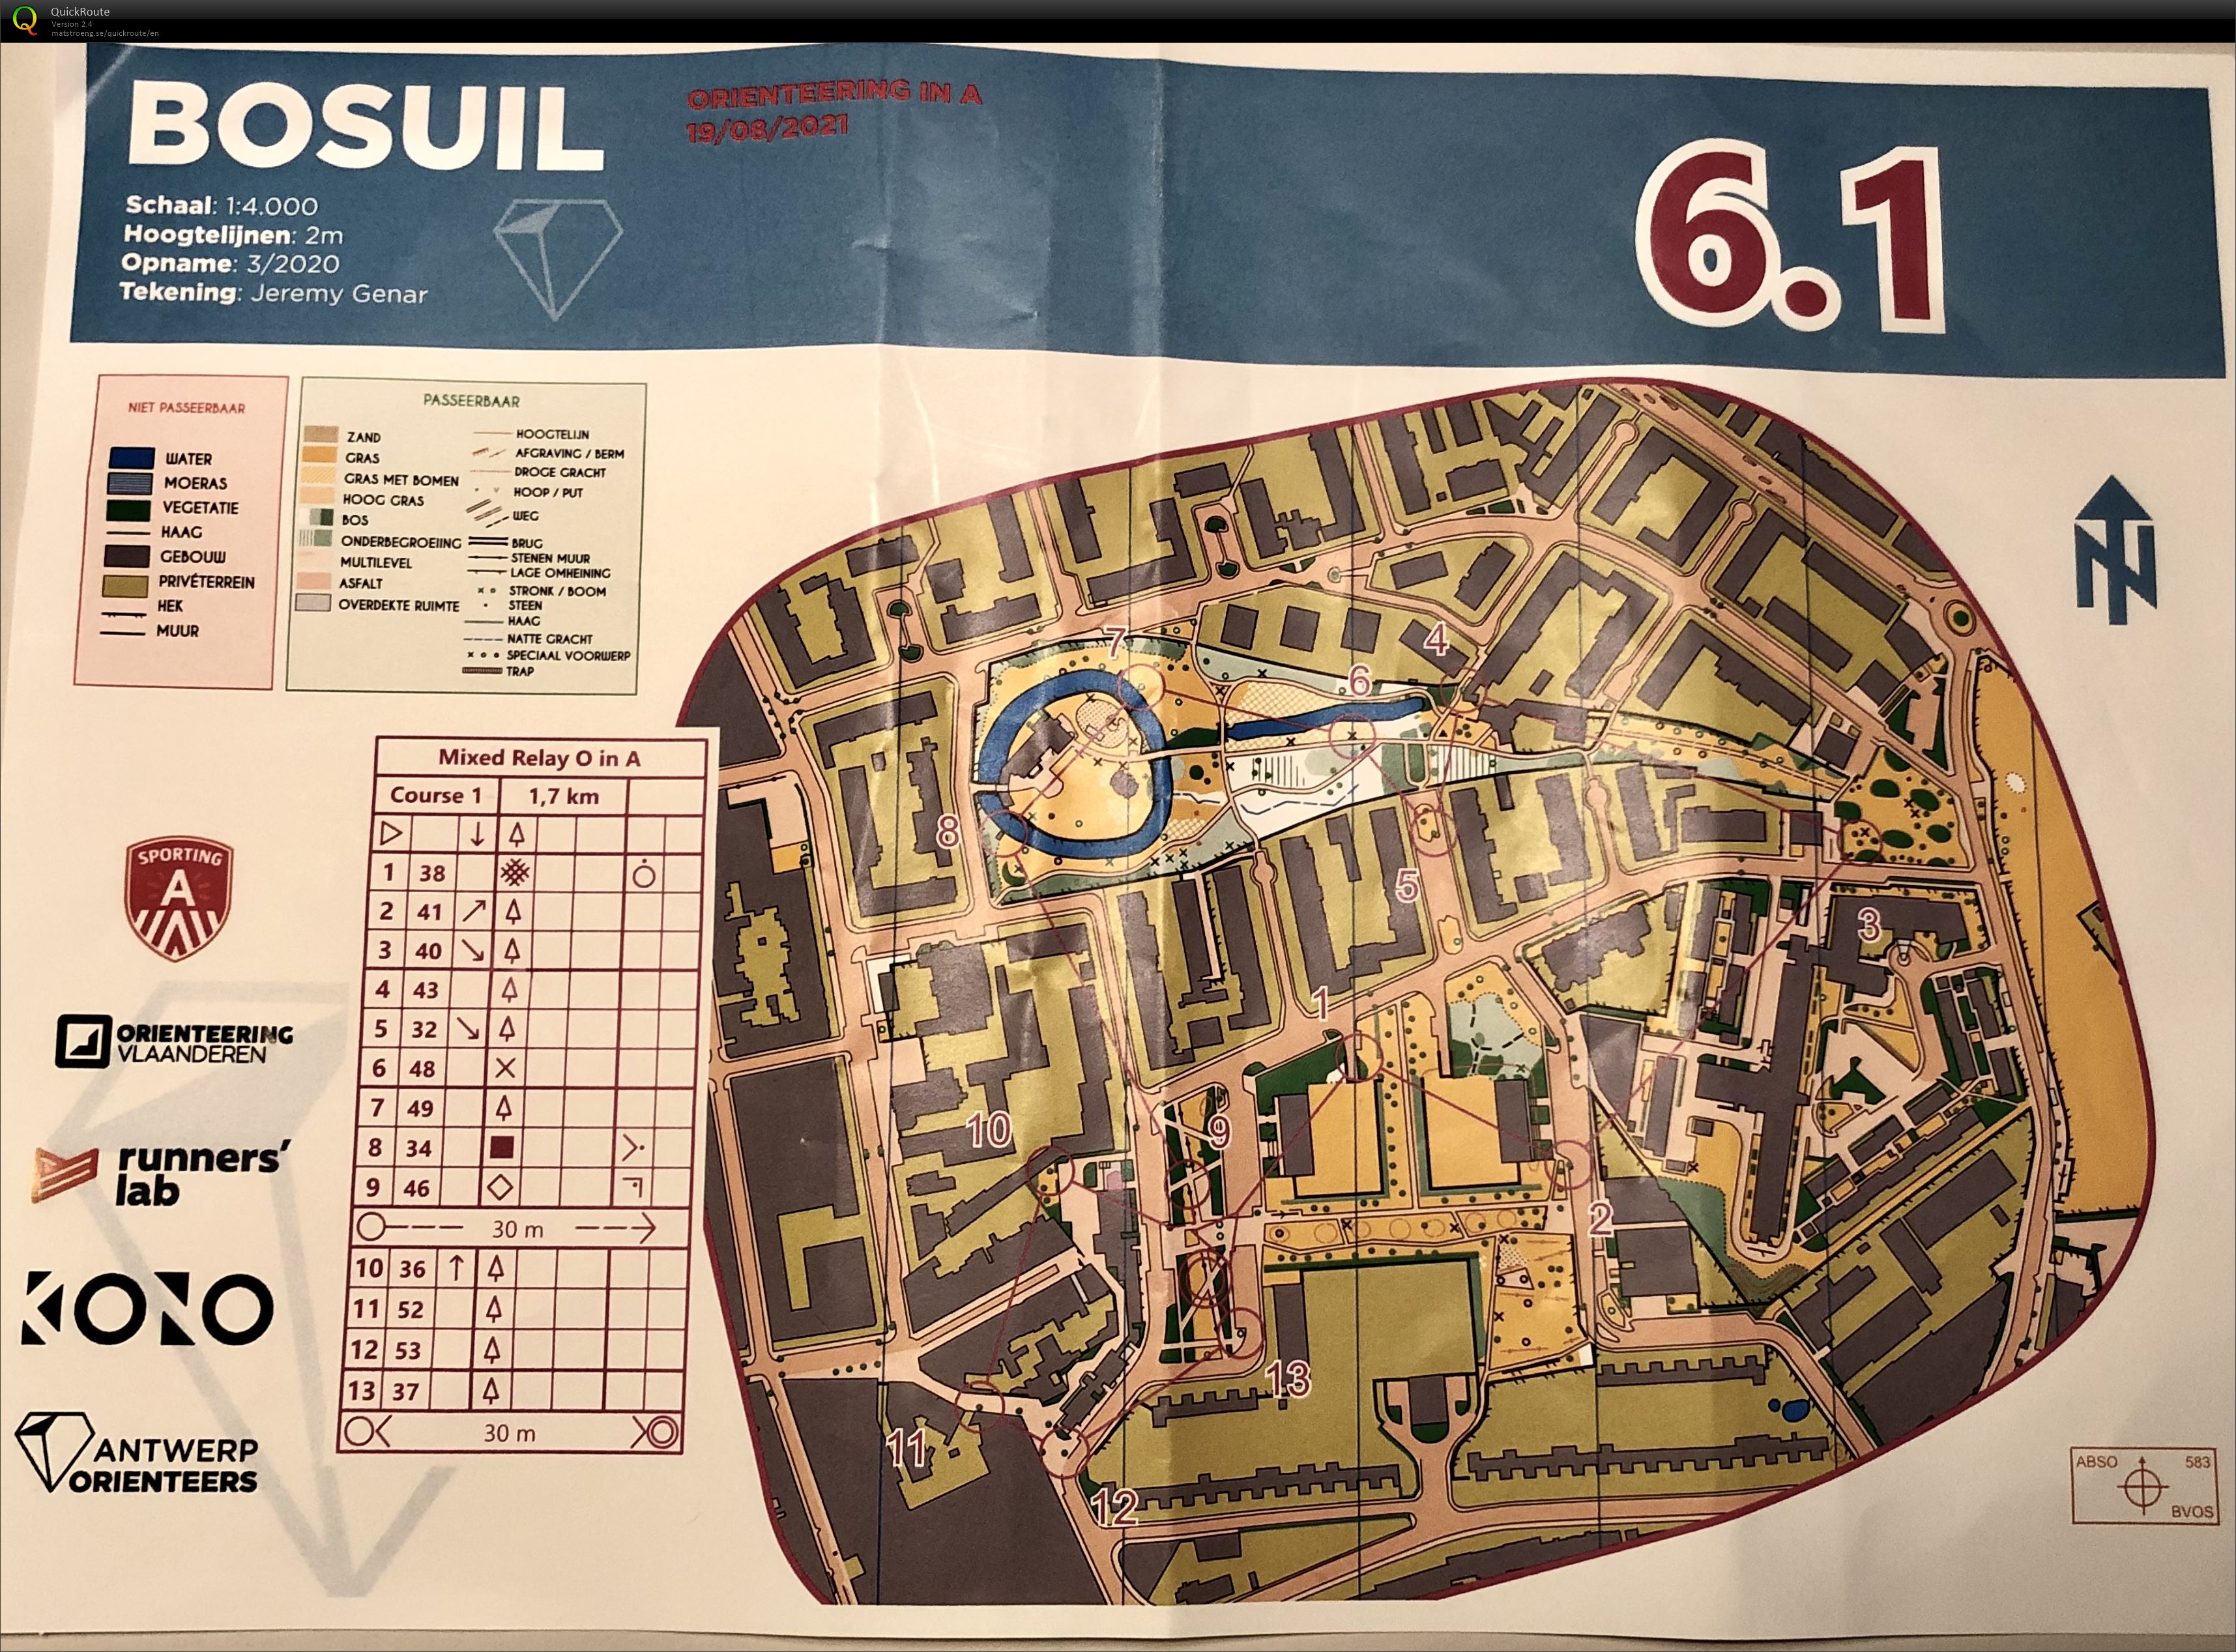 Antwerp Orienteers - Team Relay Bosuil 6.1 (19/08/2021)